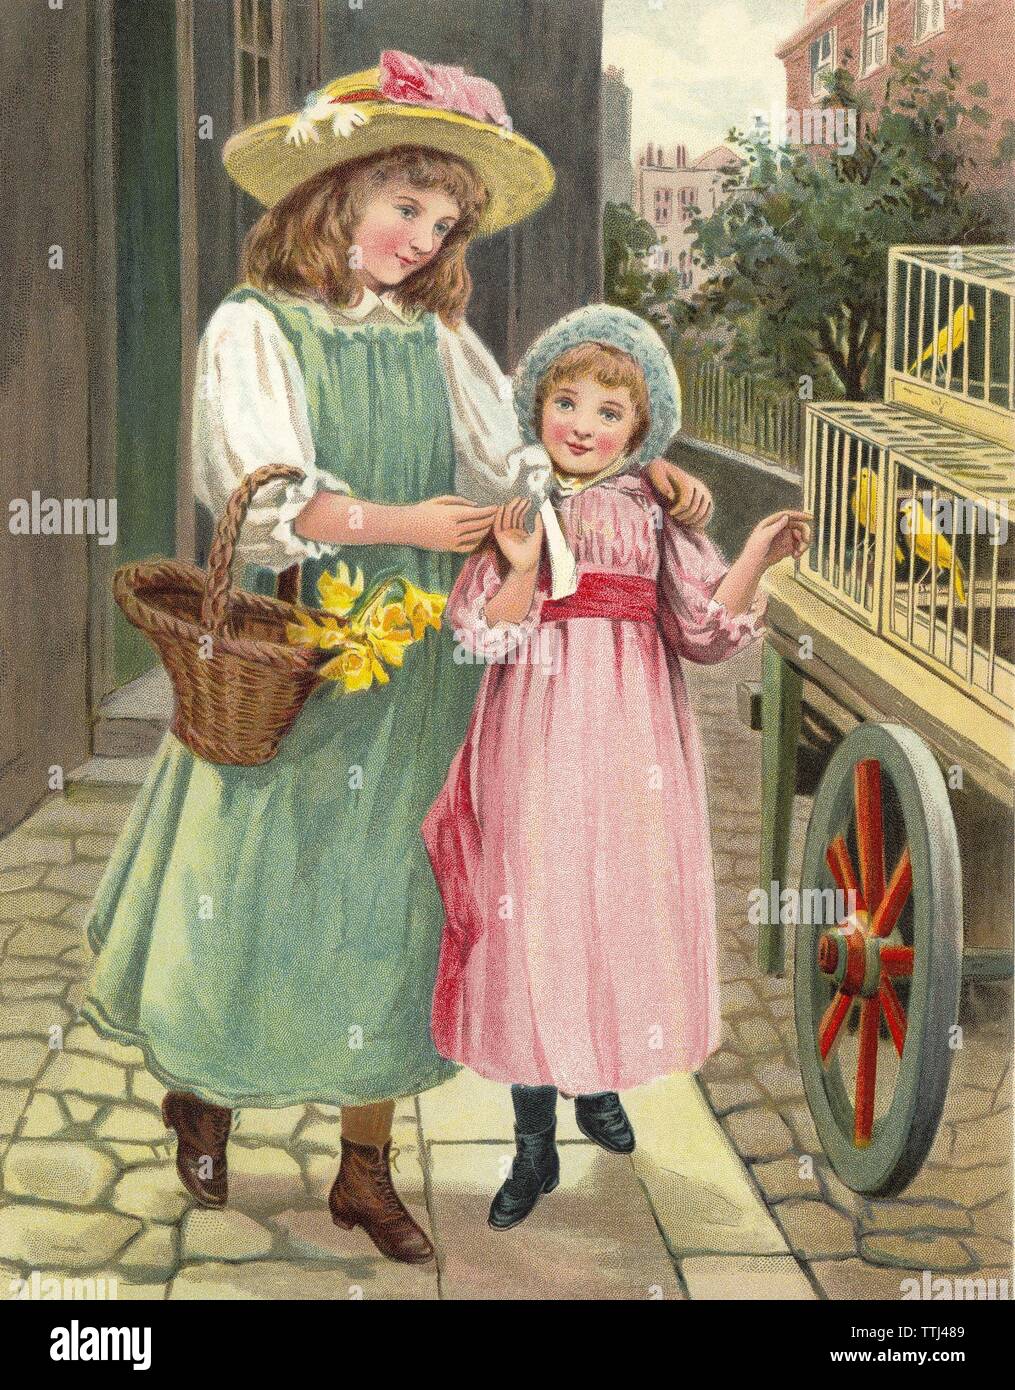 Deux jeunes filles avec des fleurs et des oiseaux en cage sur cette illustration du tournant du siècle, 1800-1900. Banque D'Images